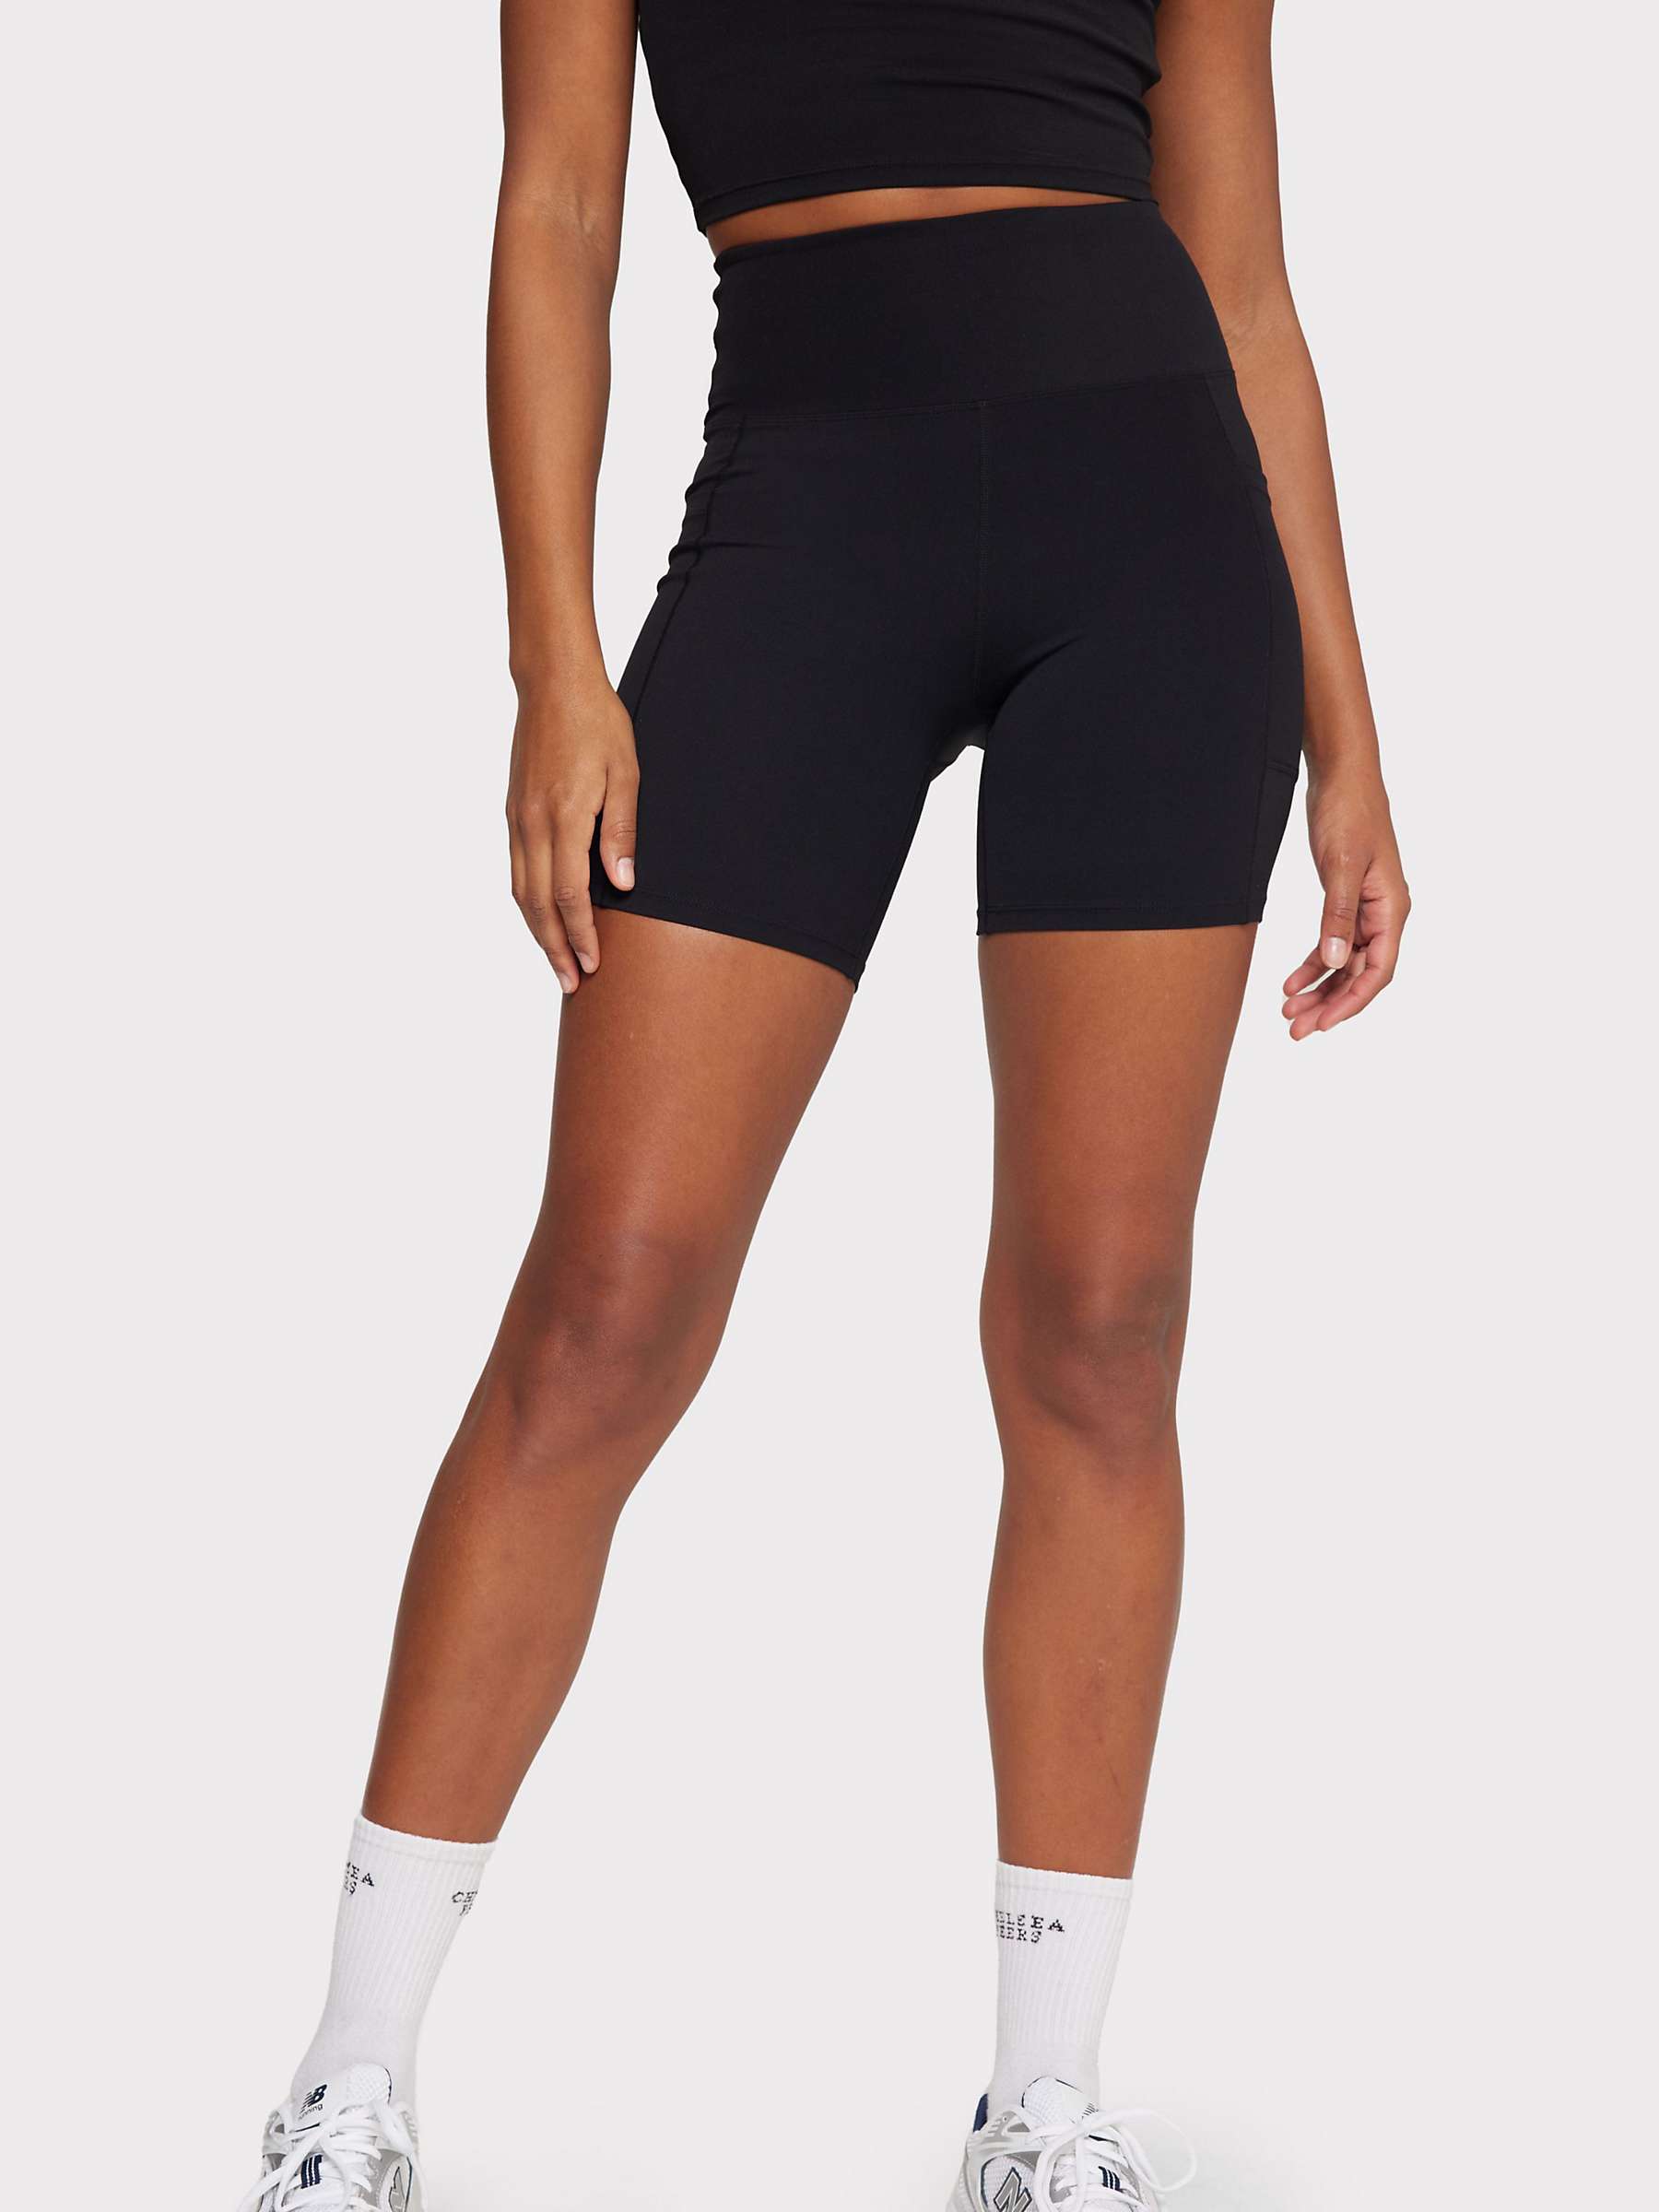 Buy Chelsea Peers Stretch Bike Shorts, Black Online at johnlewis.com